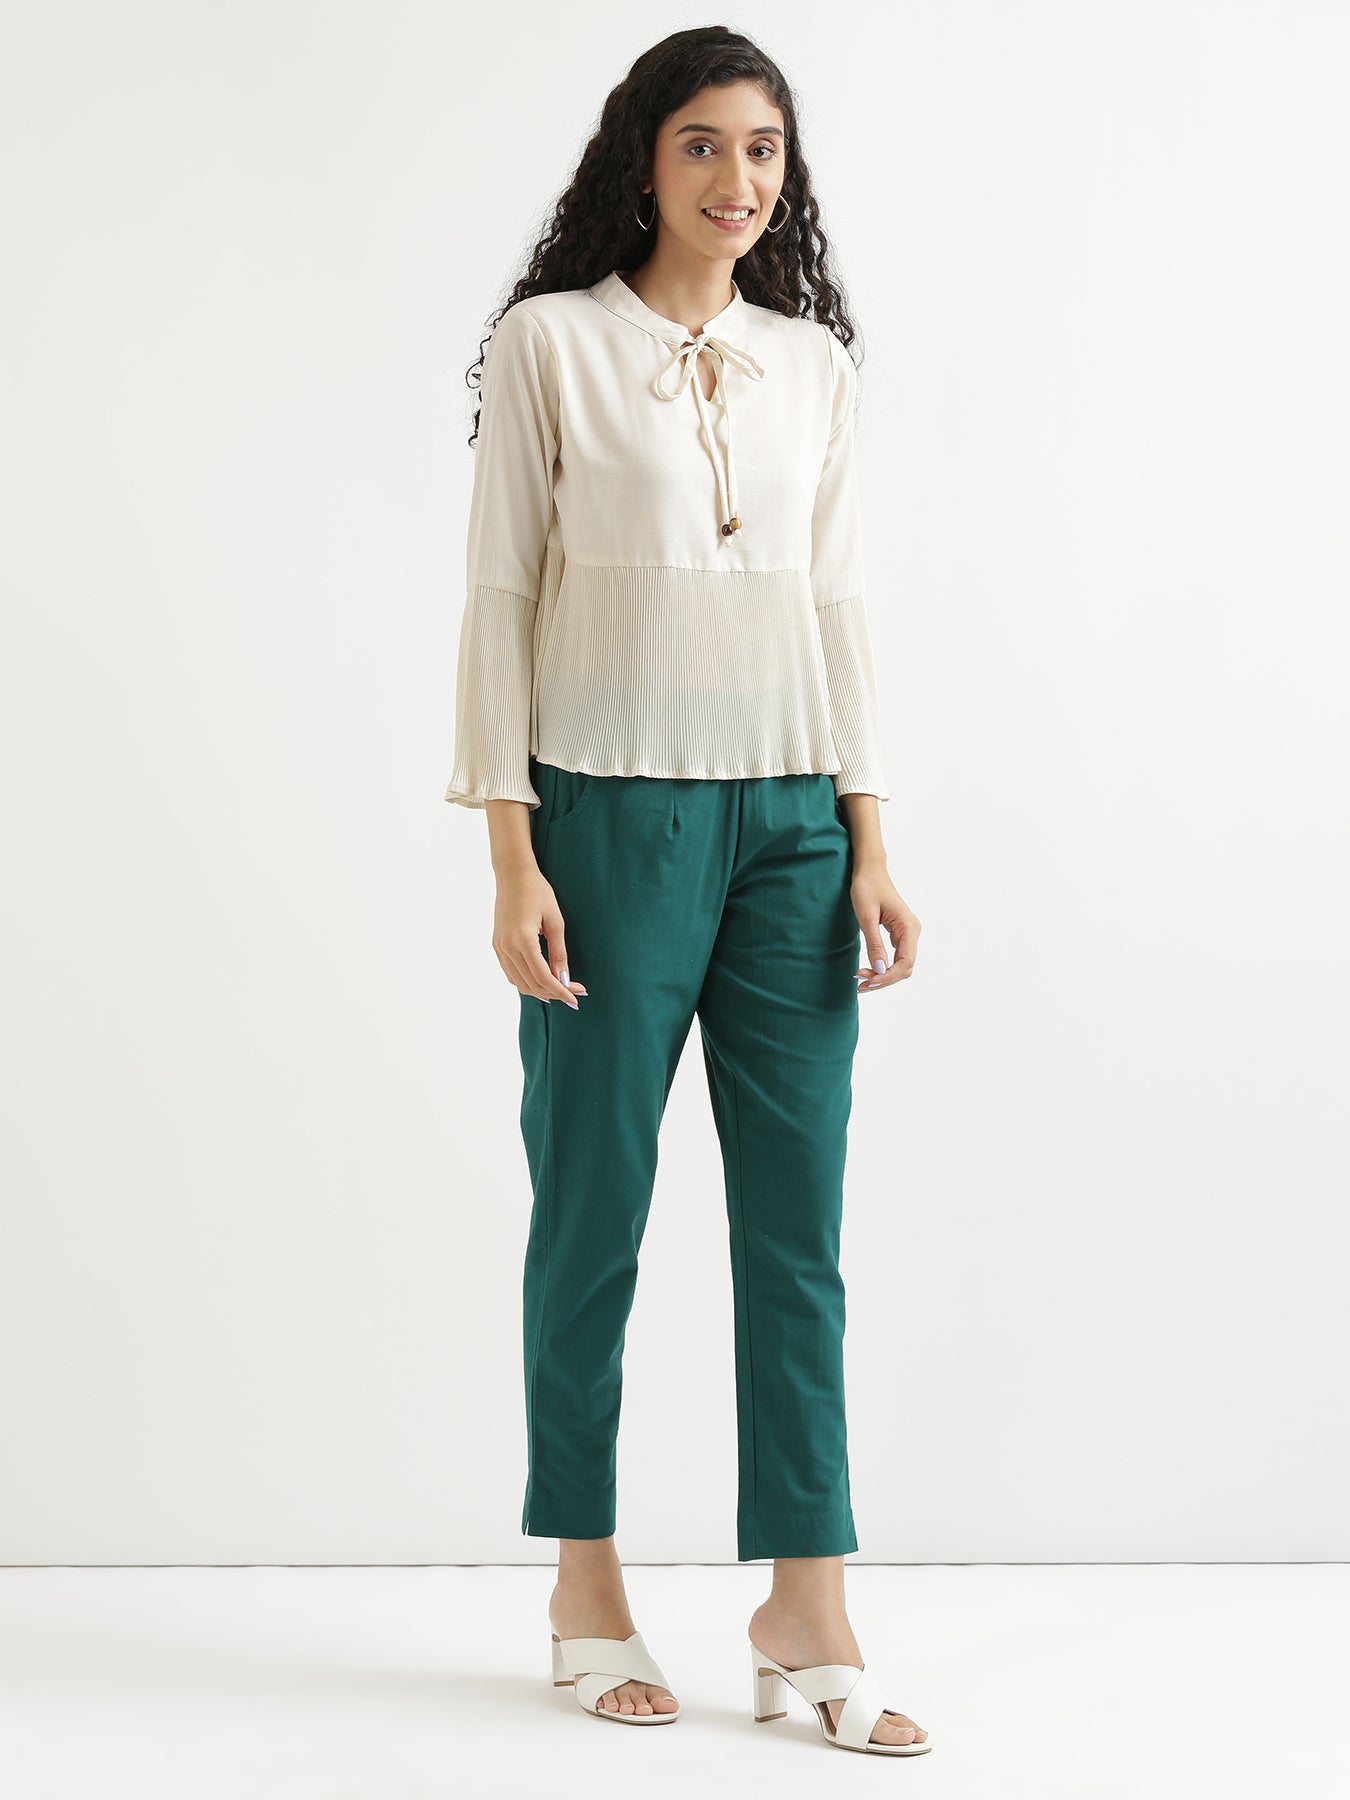 Light Cotton Pants For Womens, Shop Online